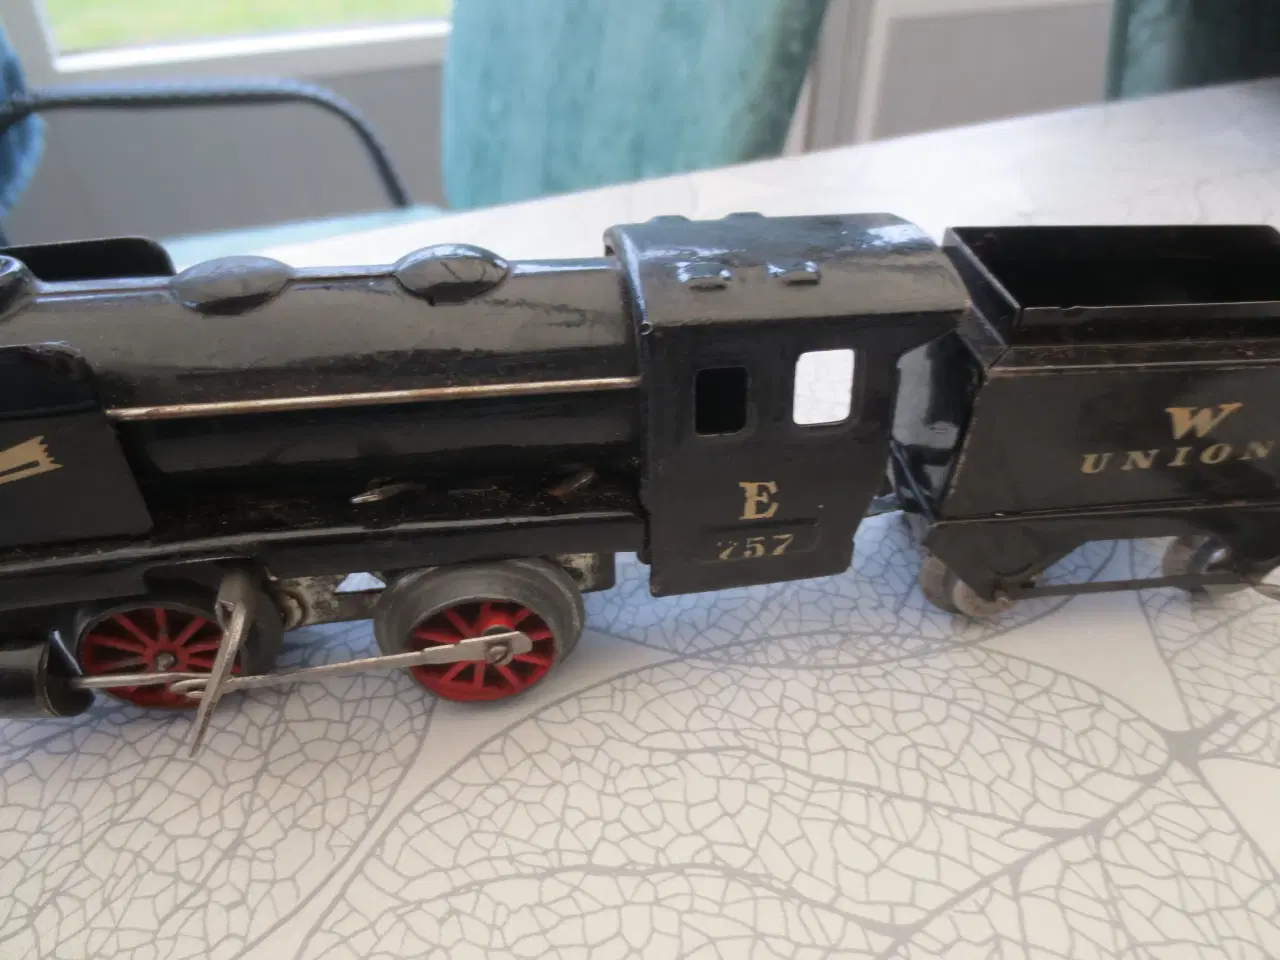 Billede 2 - Retro Modeltog W UNION E757 lokomotiv 